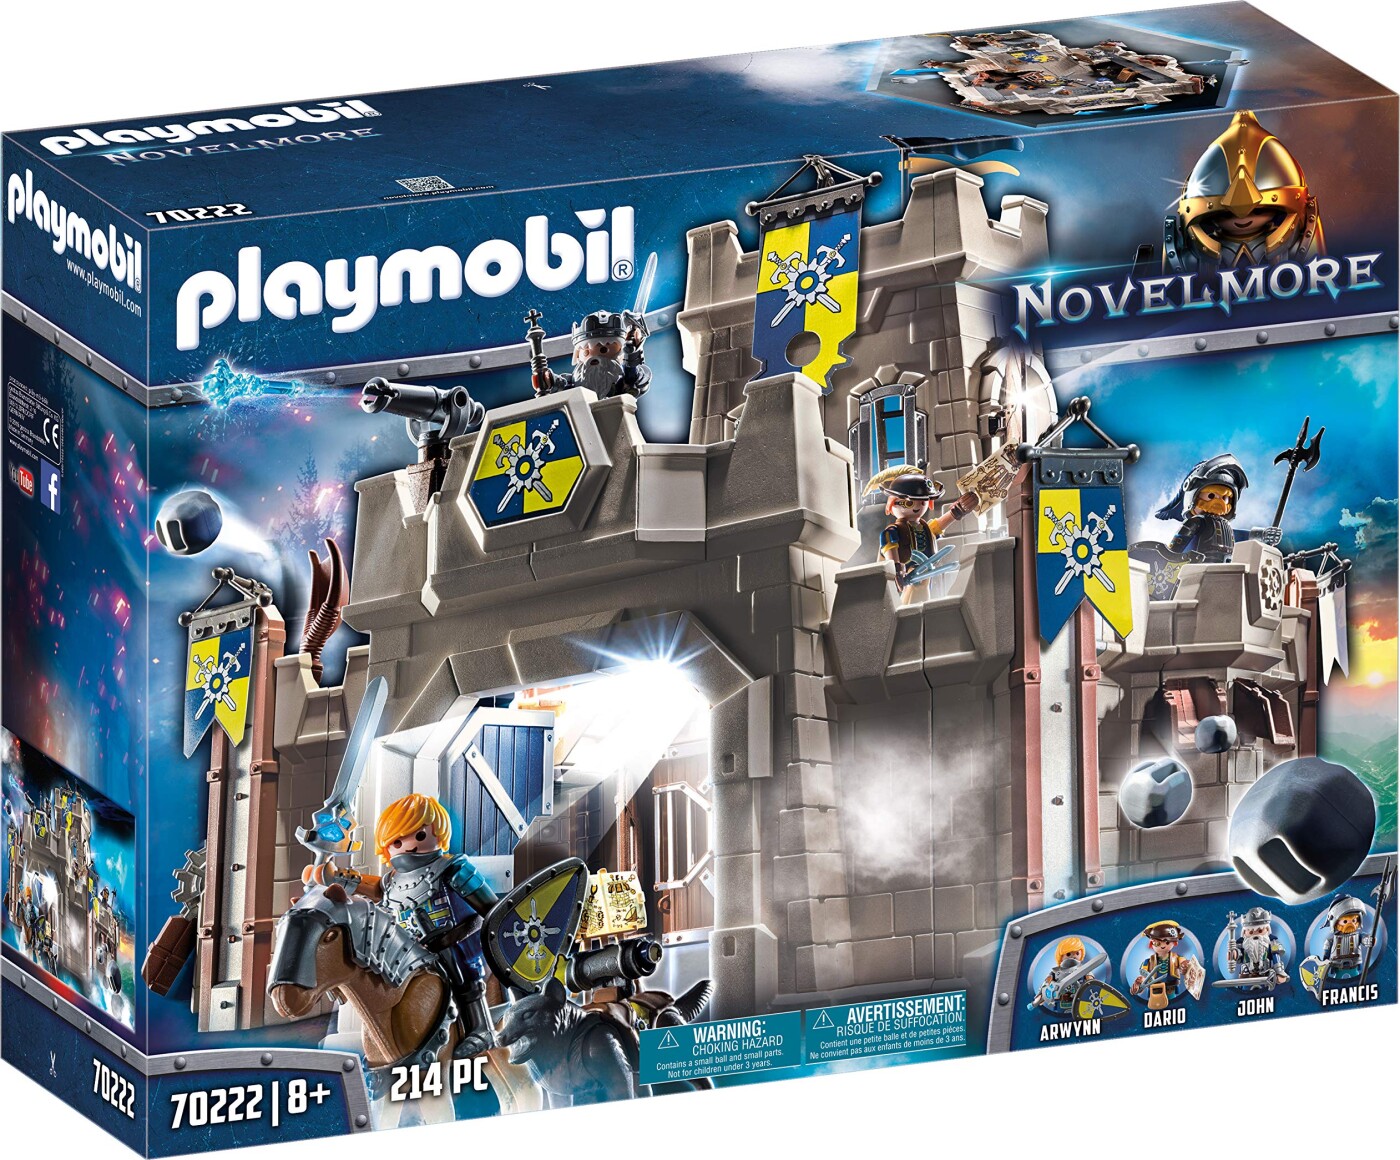 Playmobil Novelmore - Slot Med Riddere Og - 70222 | Se tilbud og køb på Gucca.dk